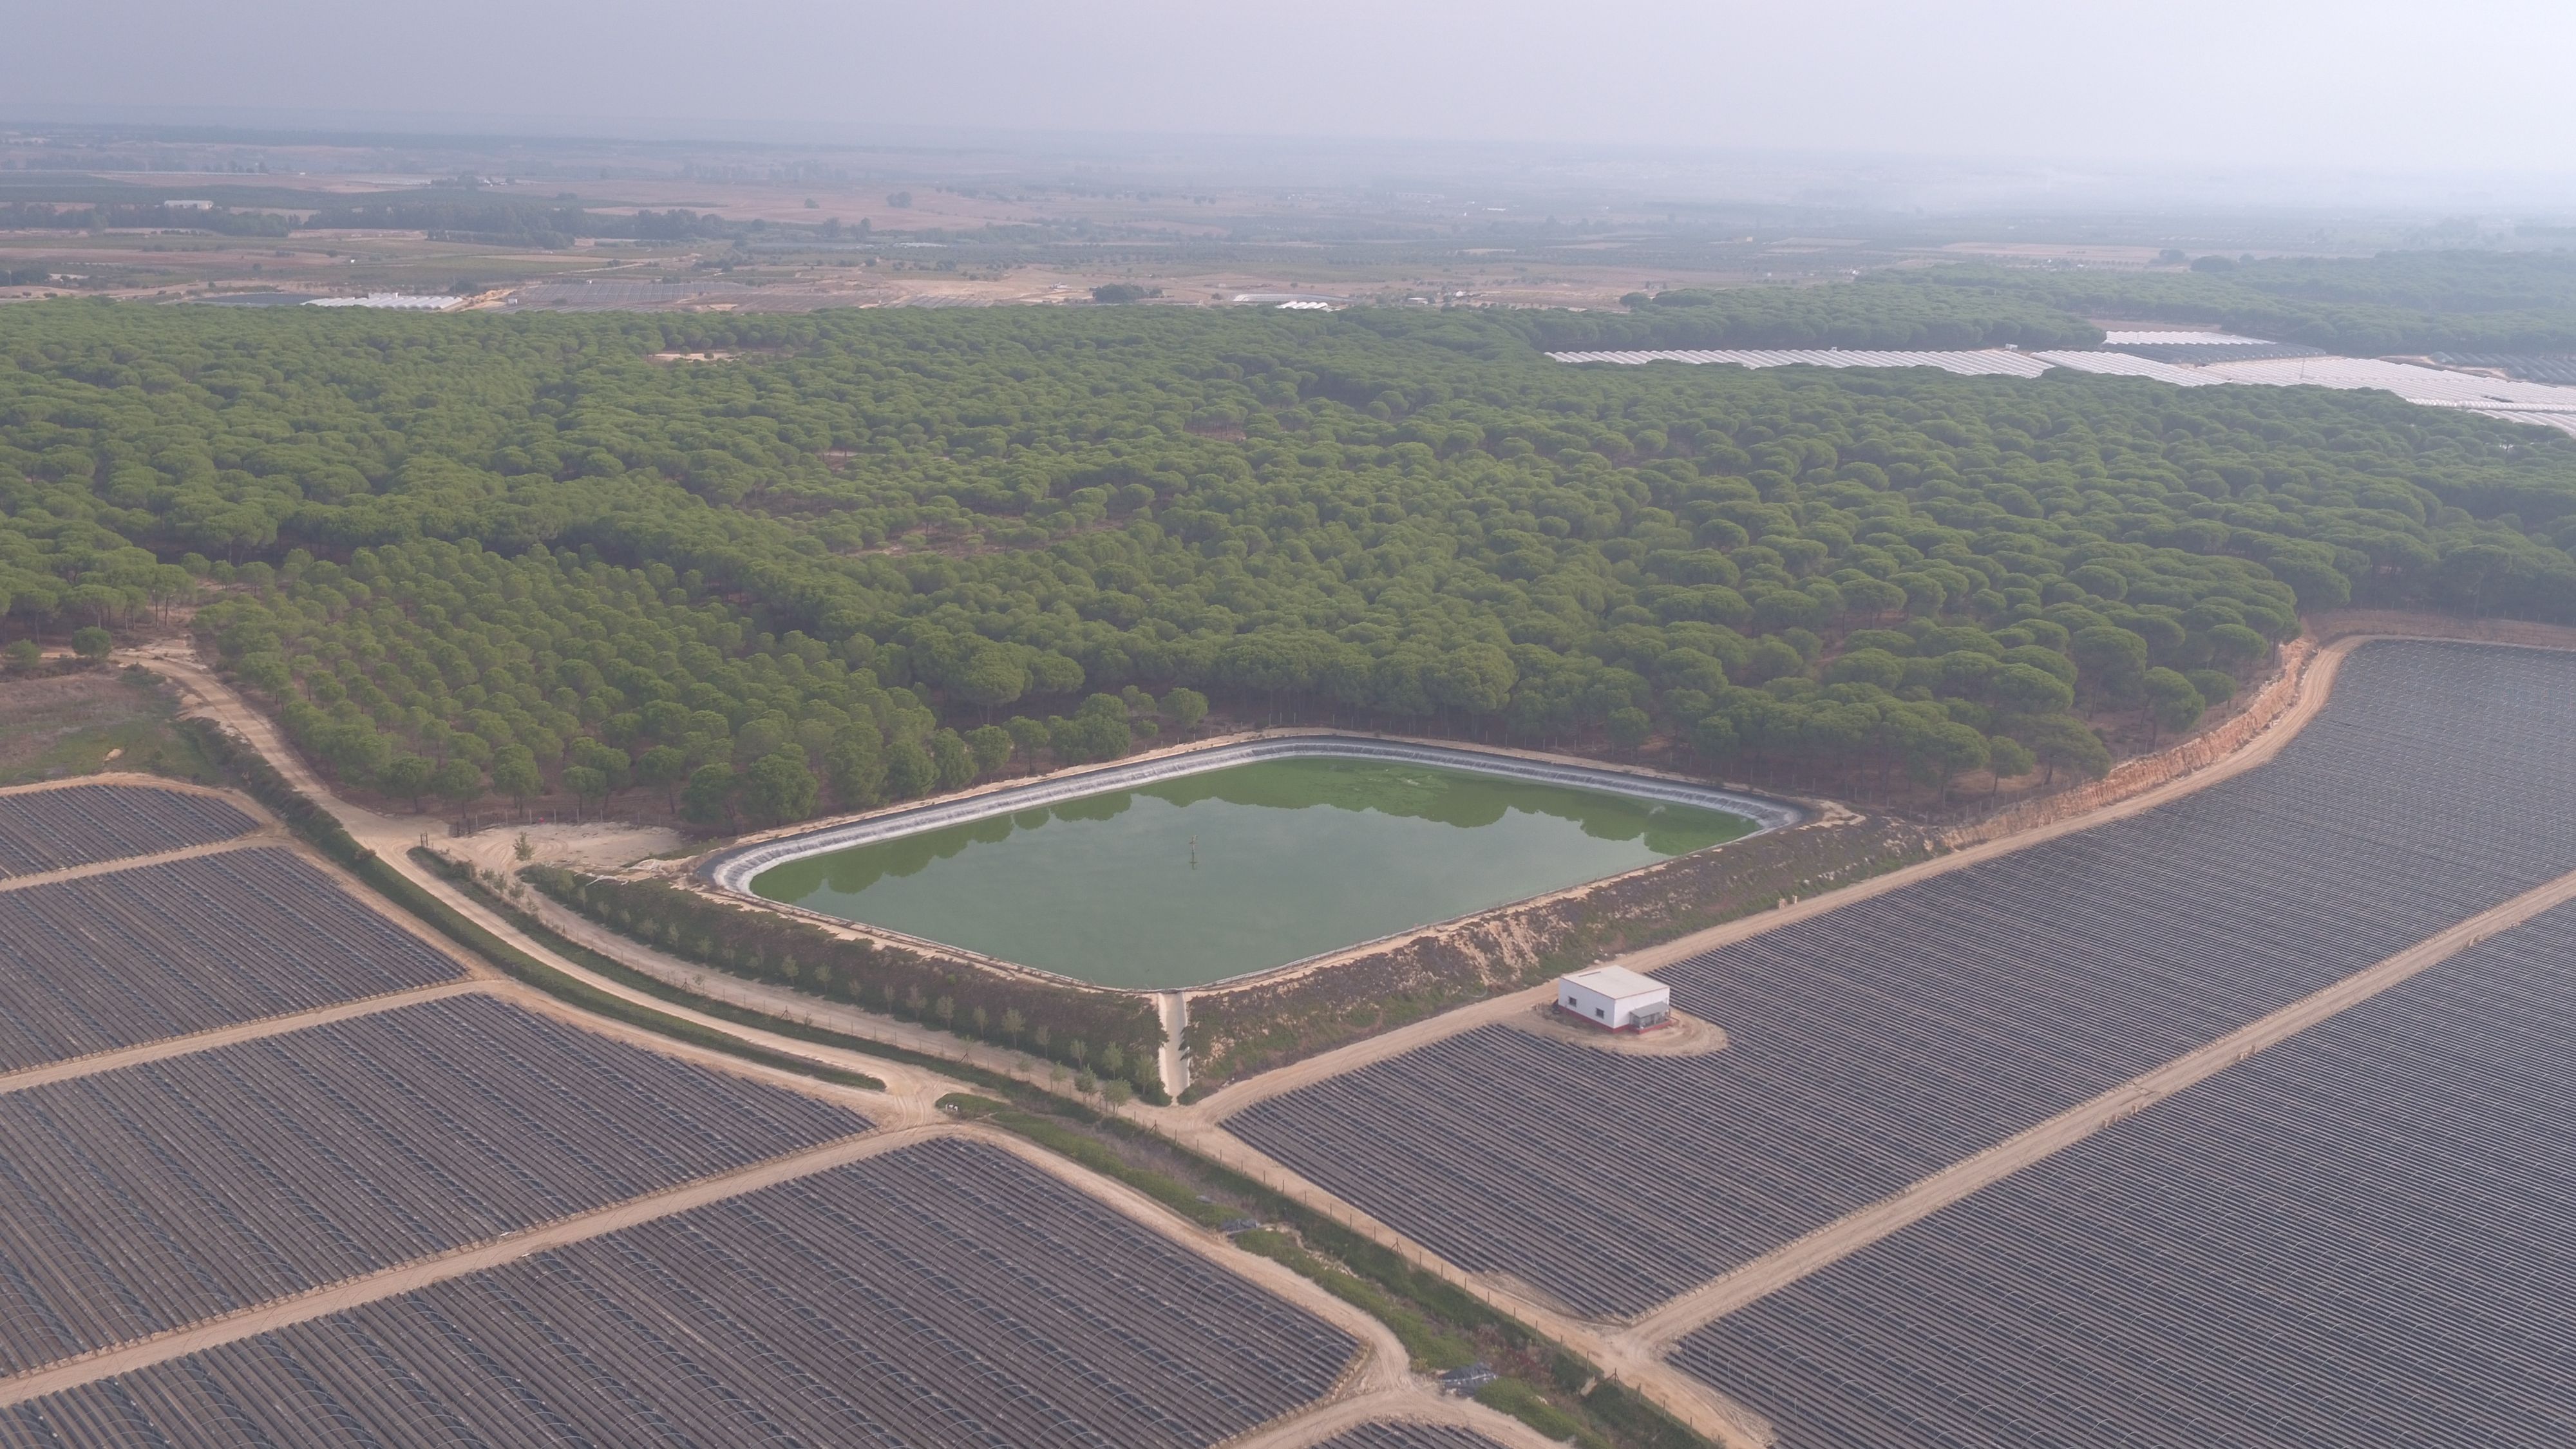 Balsas de riego en el entorno de Doñana, en una imagen de WWF. Se agrava la situación crítica del parque.